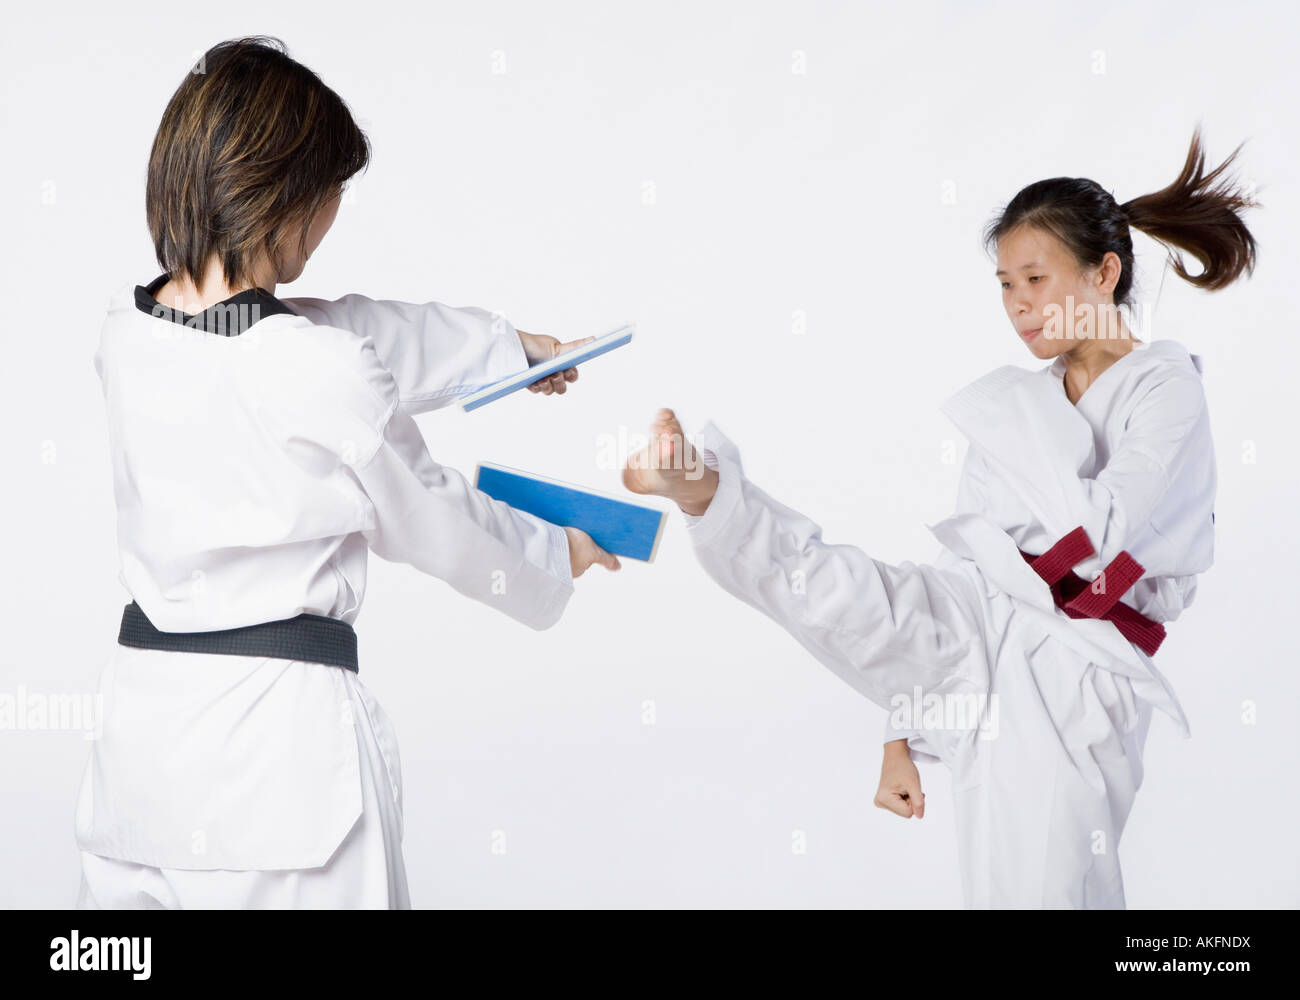 Portrait de deux jeunes femmes qui pratiquent le kickboxing Banque D'Images